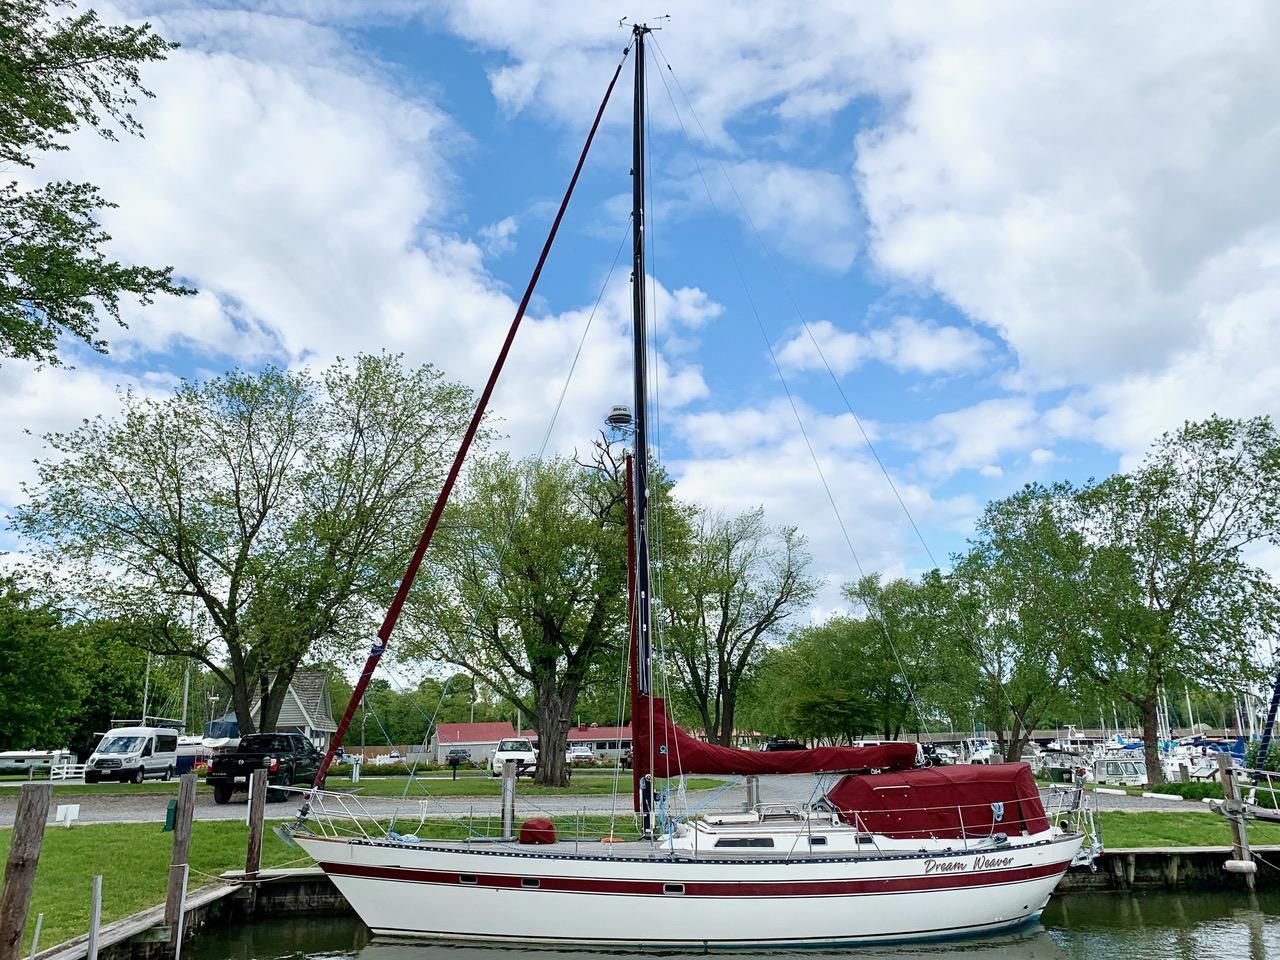 44 foot lafitte sailboat